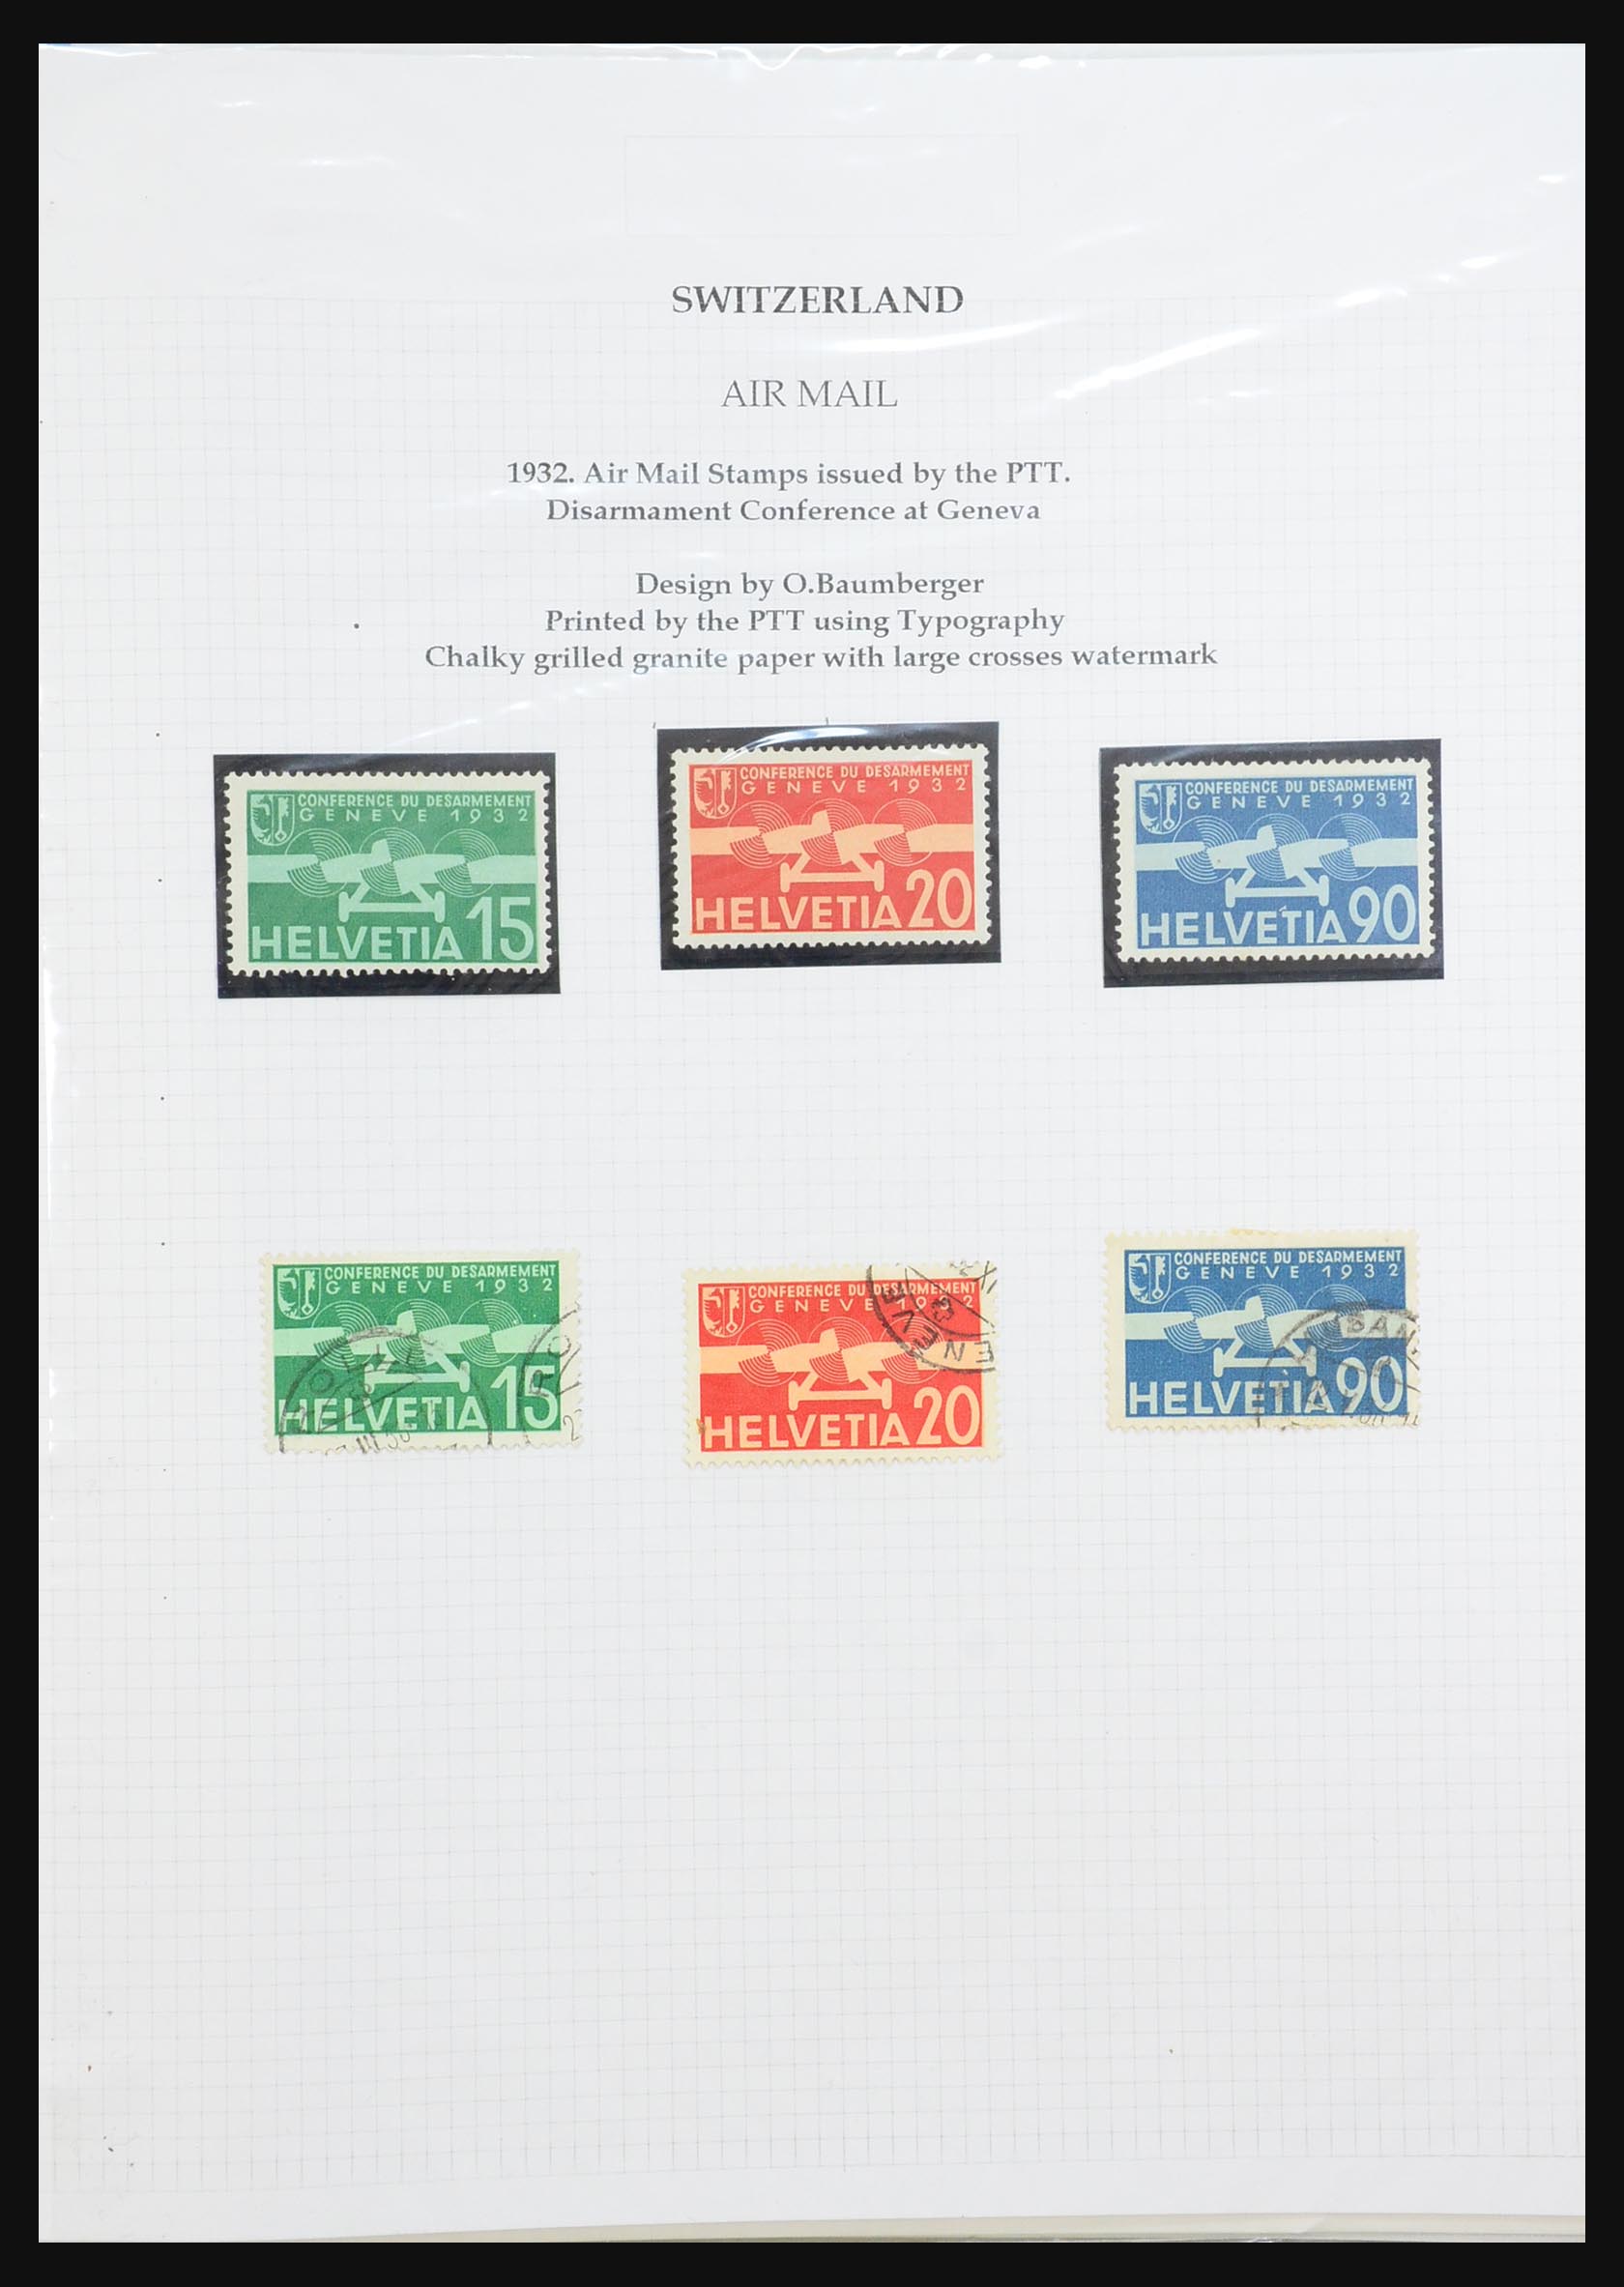 31444 055 - 31444 Switzerland airmail covers 1922-1946.